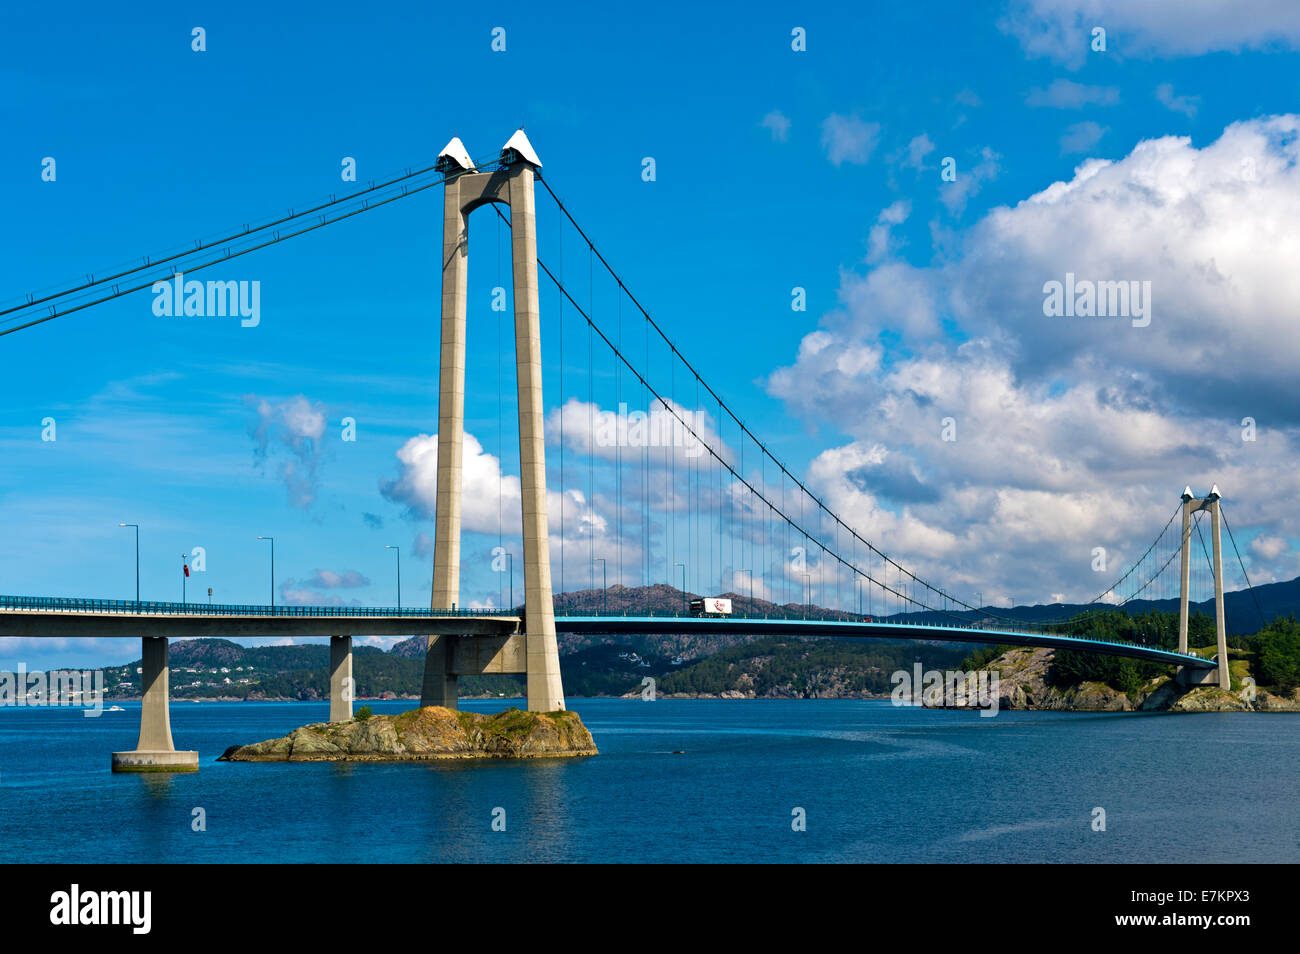 Pylône en béton du pont suspendu Pont Stord ou Stordabrua Digernessundet, de l'autre côté de la La Spezia, Norvège Banque D'Images